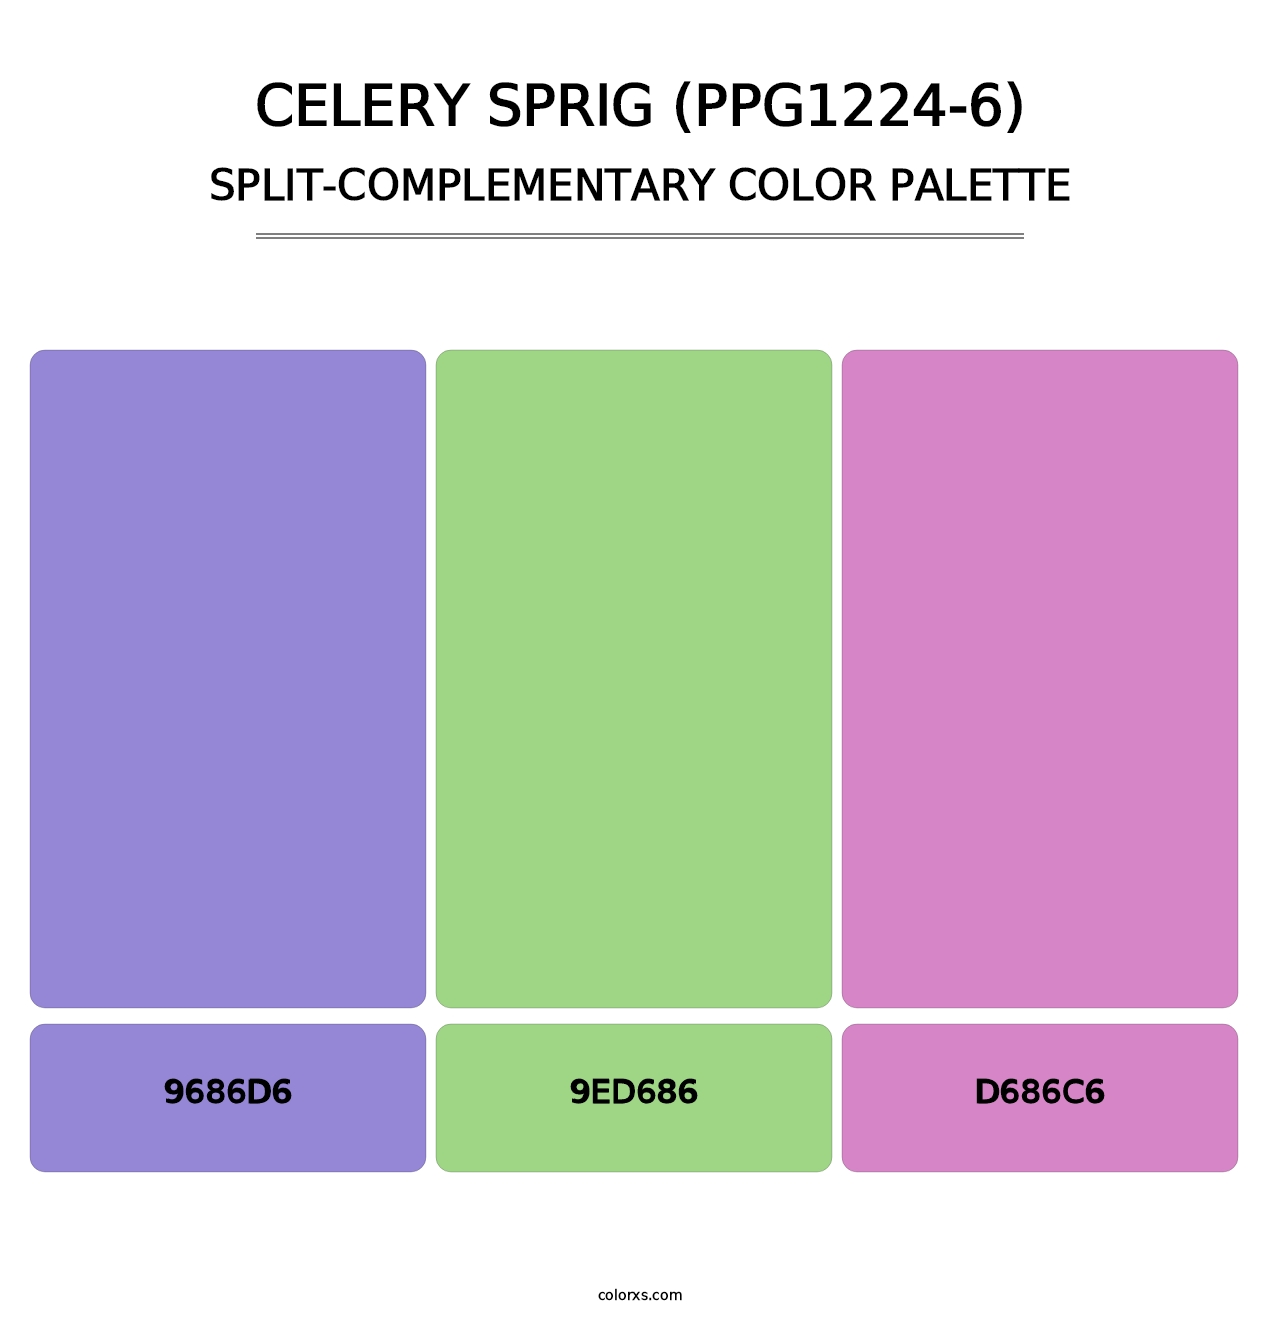 Celery Sprig (PPG1224-6) - Split-Complementary Color Palette